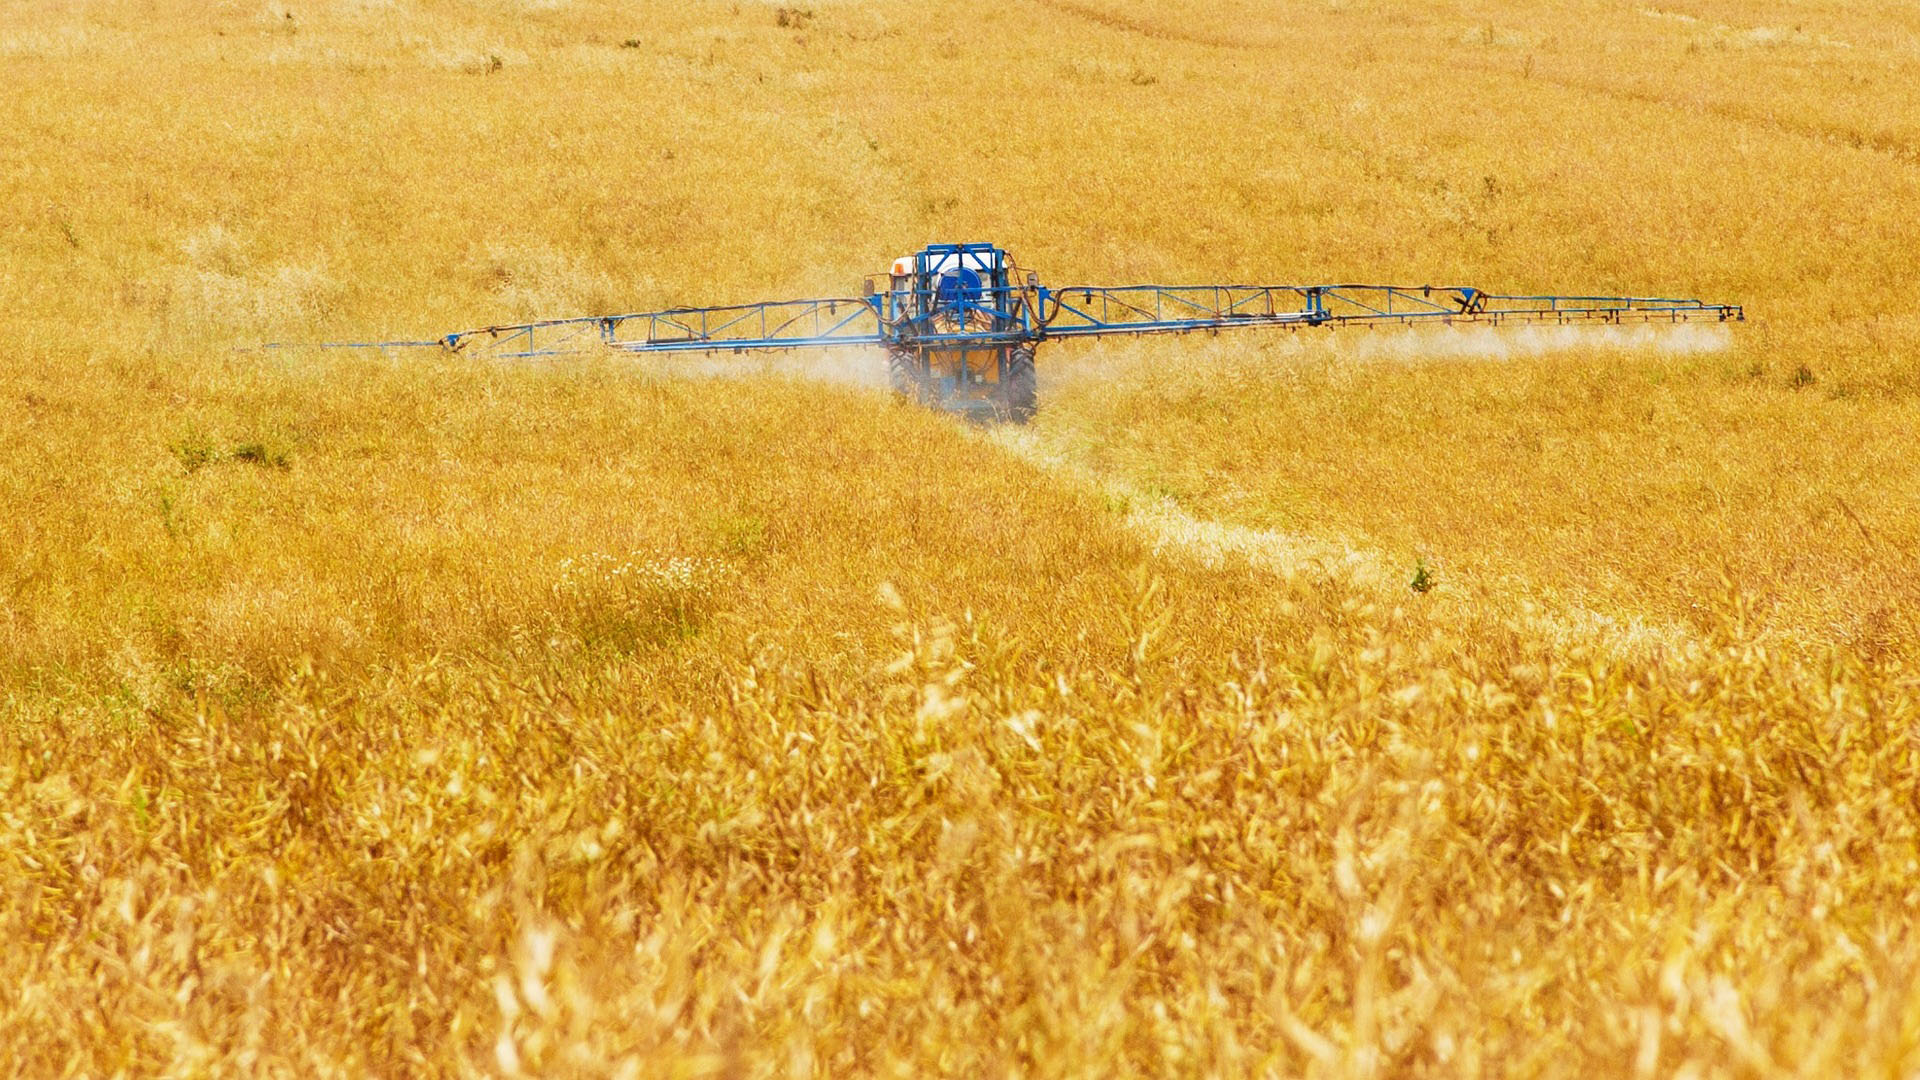 Ackergifte auf Deutschen Feldern: 150 neue Pestizide zugelassen